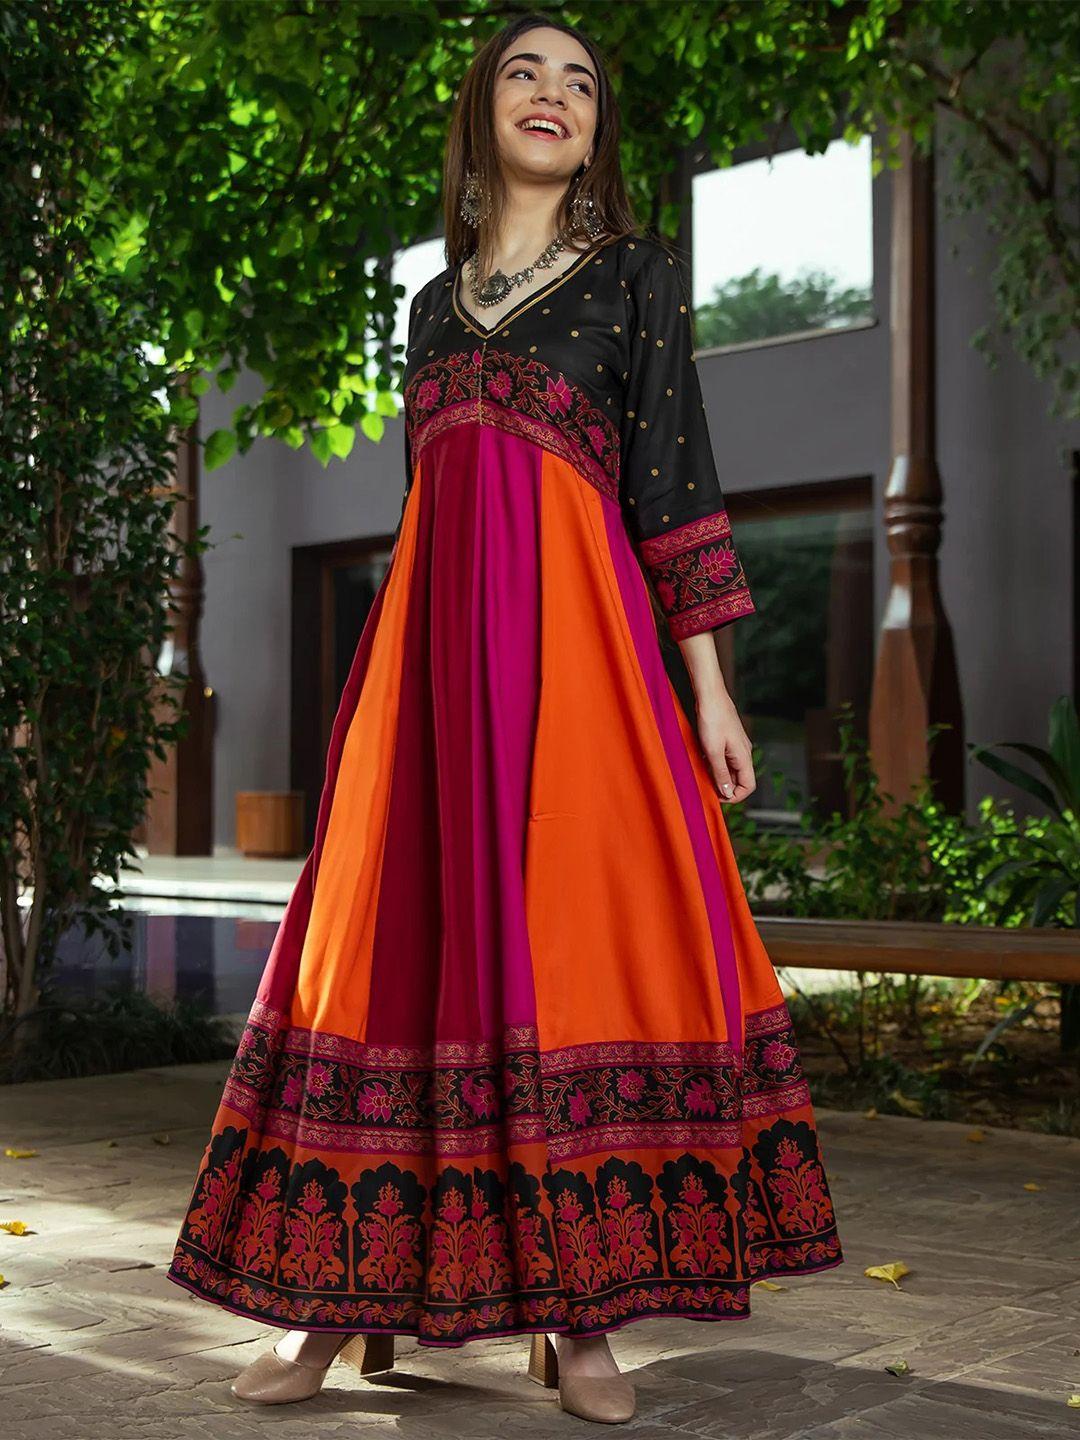 rustorange multicoloured ethnic motifs maxi dress